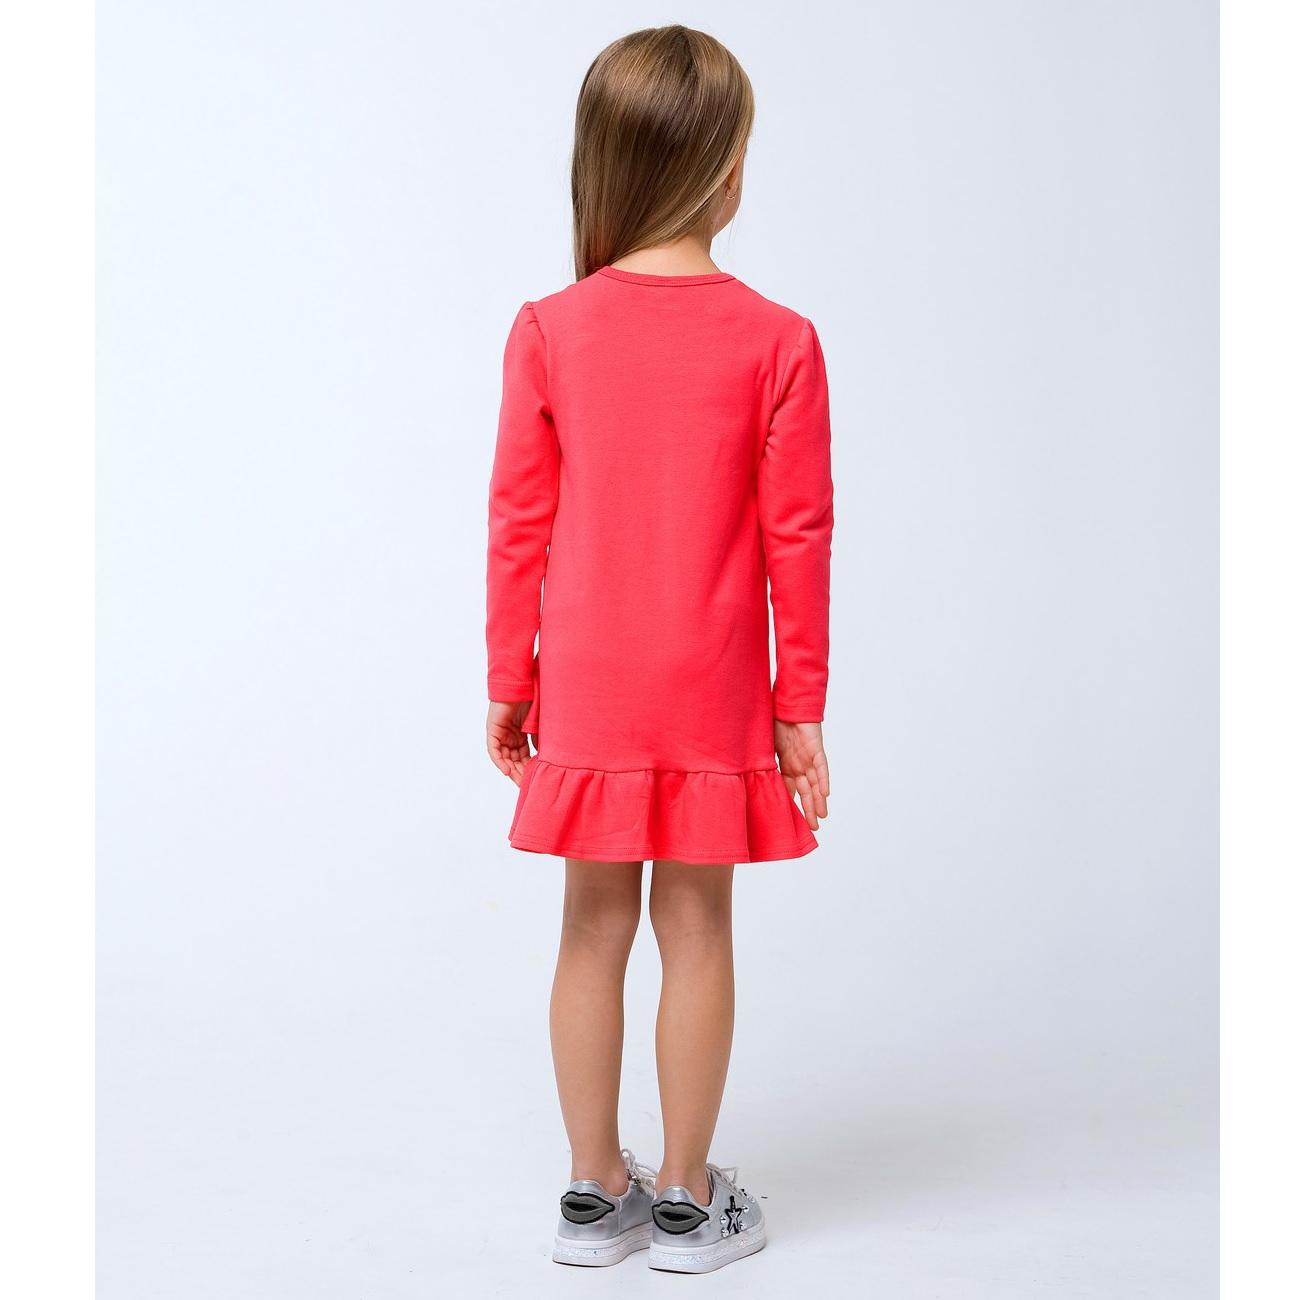 Дитяче плаття для дівчинки \"Тільки для дівчаток\", рожевий корал (120256), Smil (Смил)